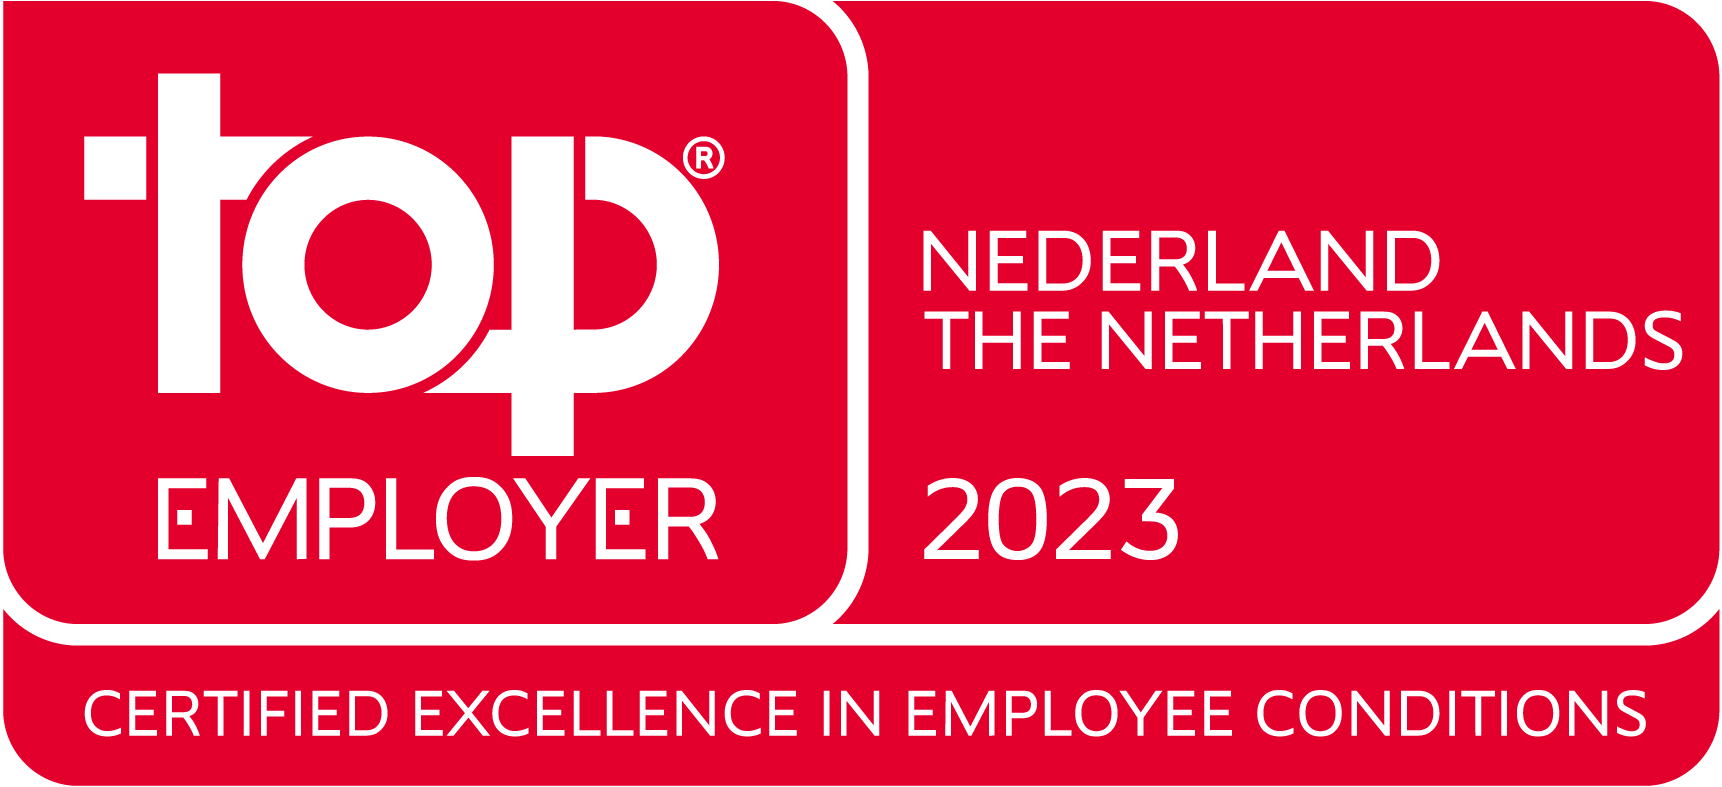 Top Employer Nederland 2023